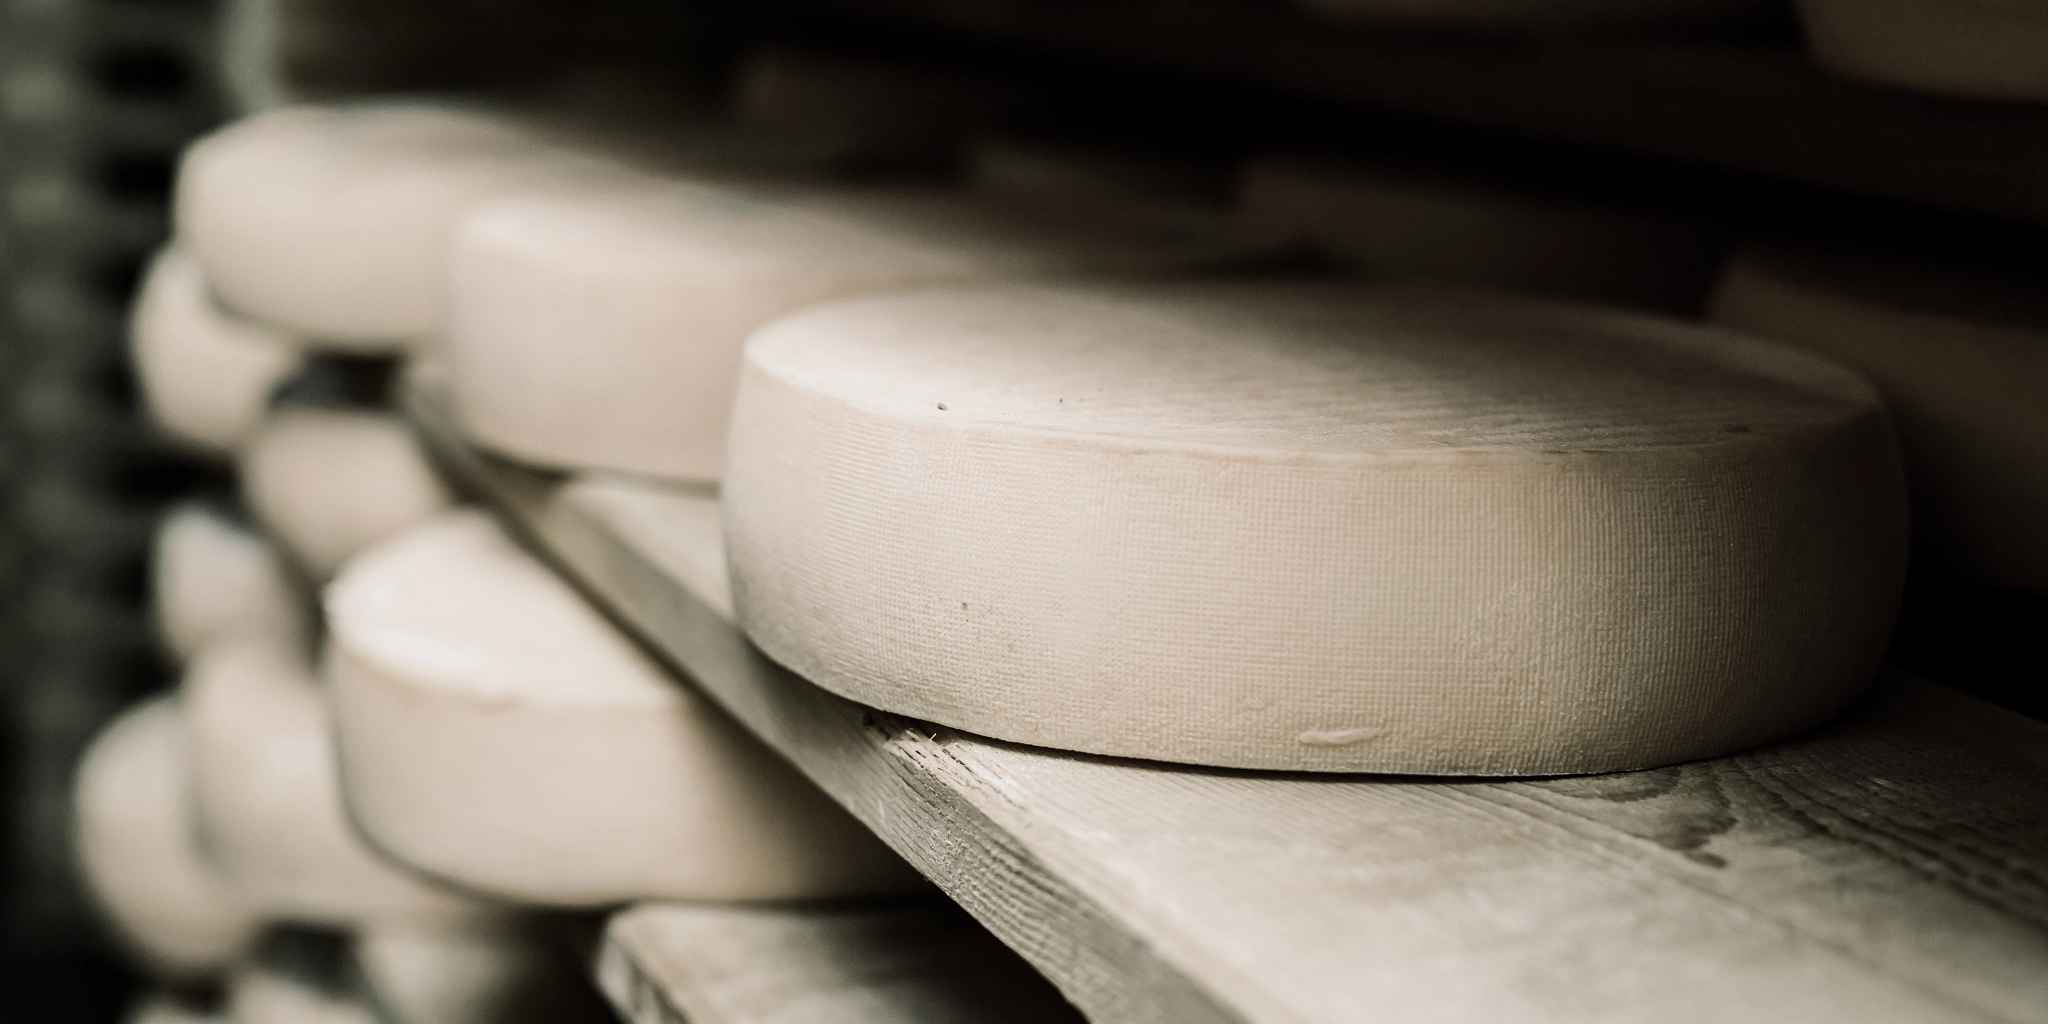 Rounds of cheese stacked on shelves - Lacto Testimonial testimonial | Atradius